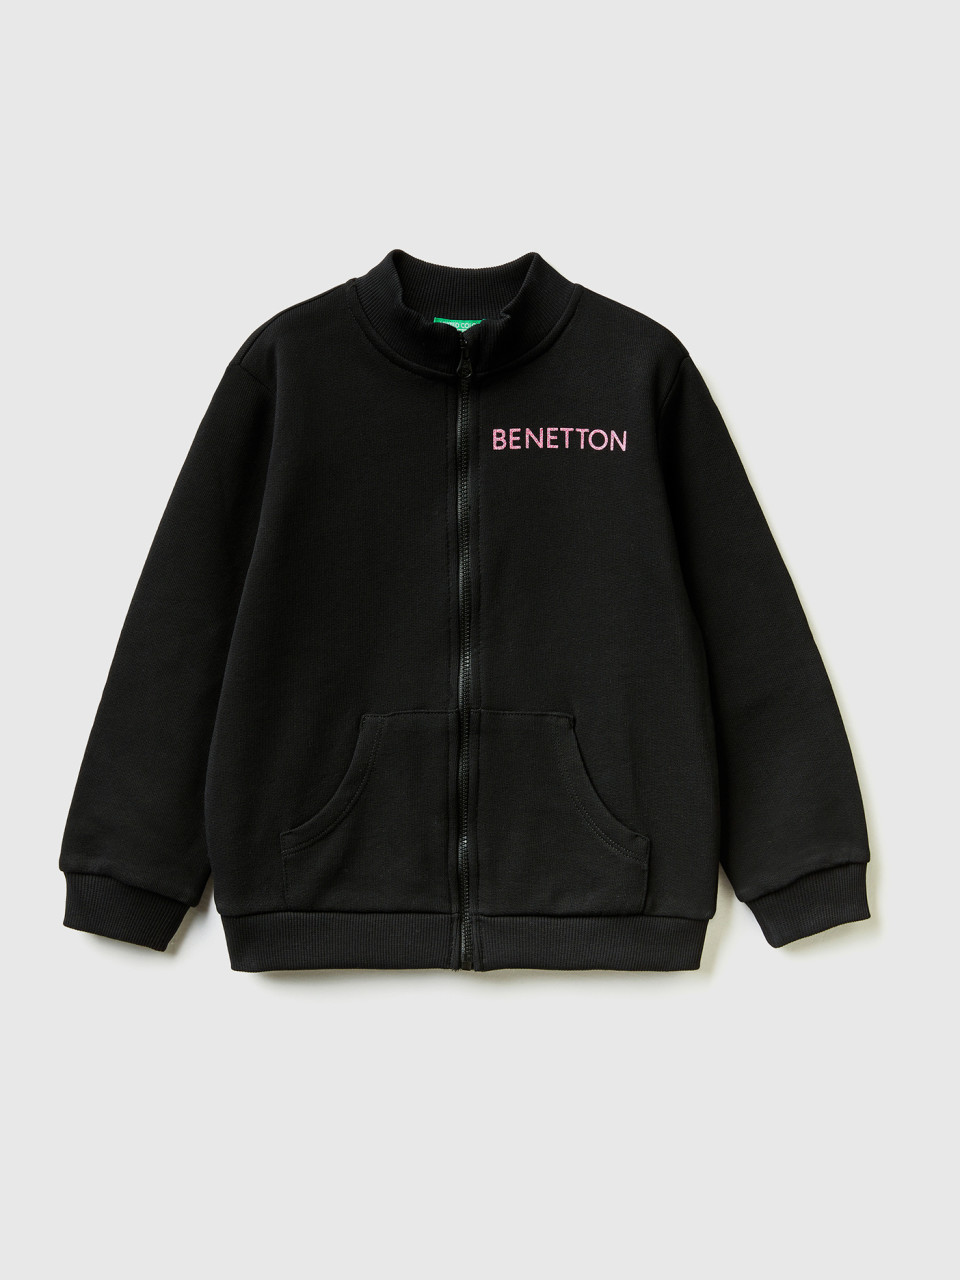 Benetton, Sweatshirt With Zip In Organic Cotton, Black, Kids